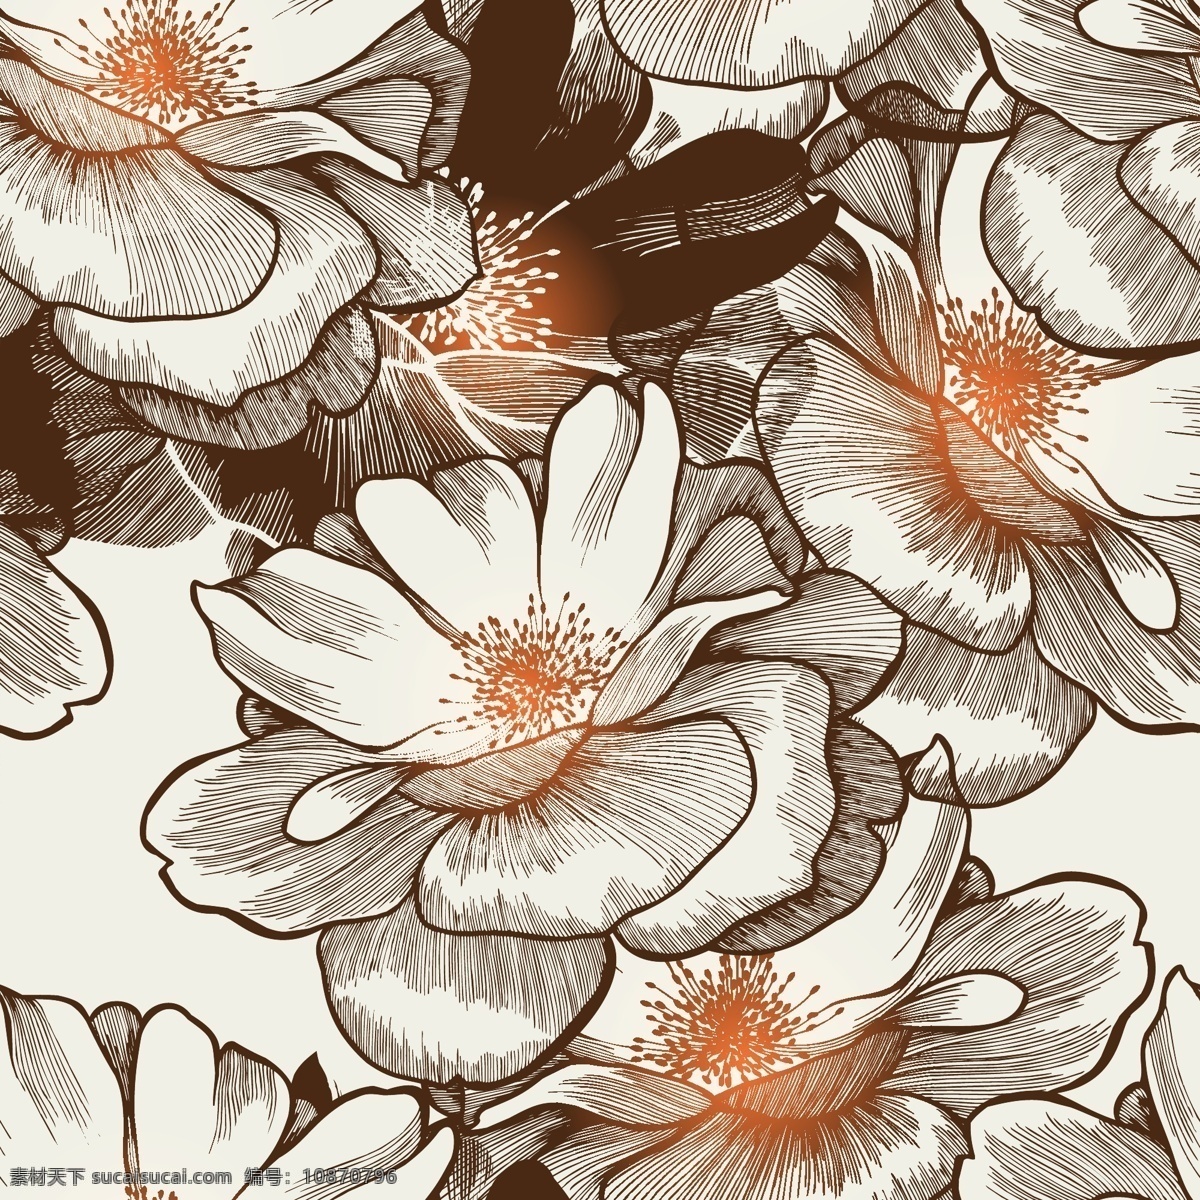 复古 花卉 背景 矢量 花朵 植物 手绘 装饰 卡片 插画 海报 画册 矢量植物 生物世界 花草